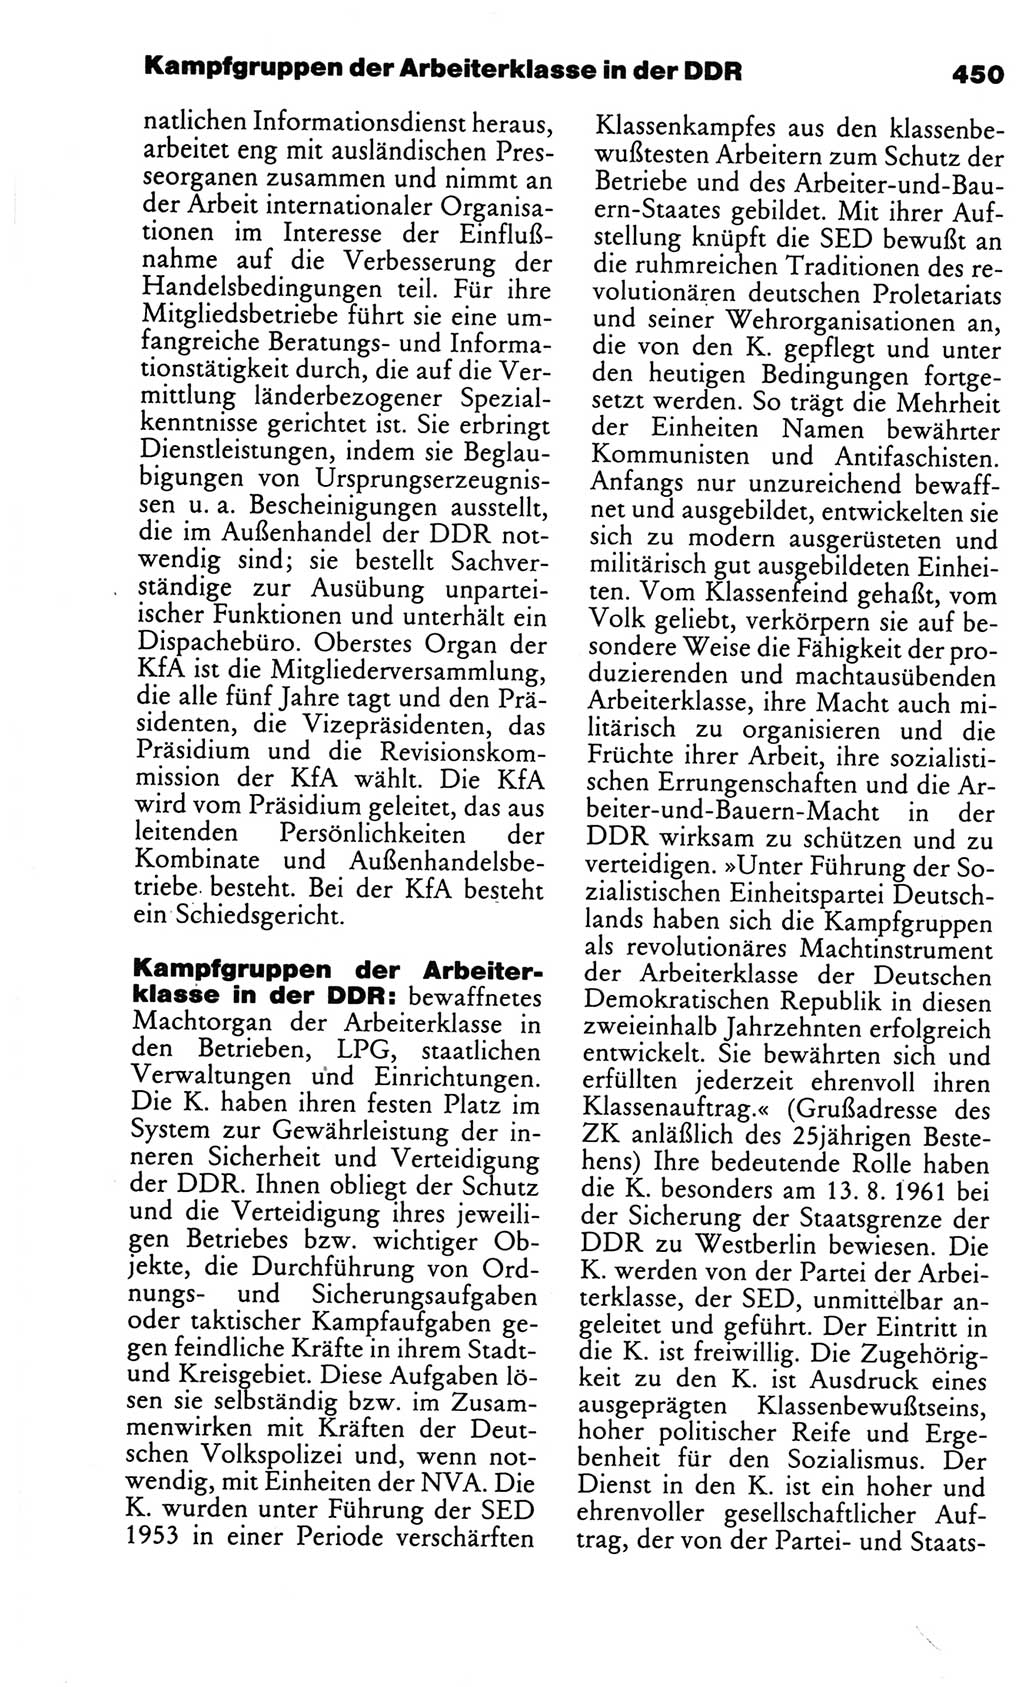 Kleines politisches Wörterbuch [Deutsche Demokratische Republik (DDR)] 1986, Seite 450 (Kl. pol. Wb. DDR 1986, S. 450)